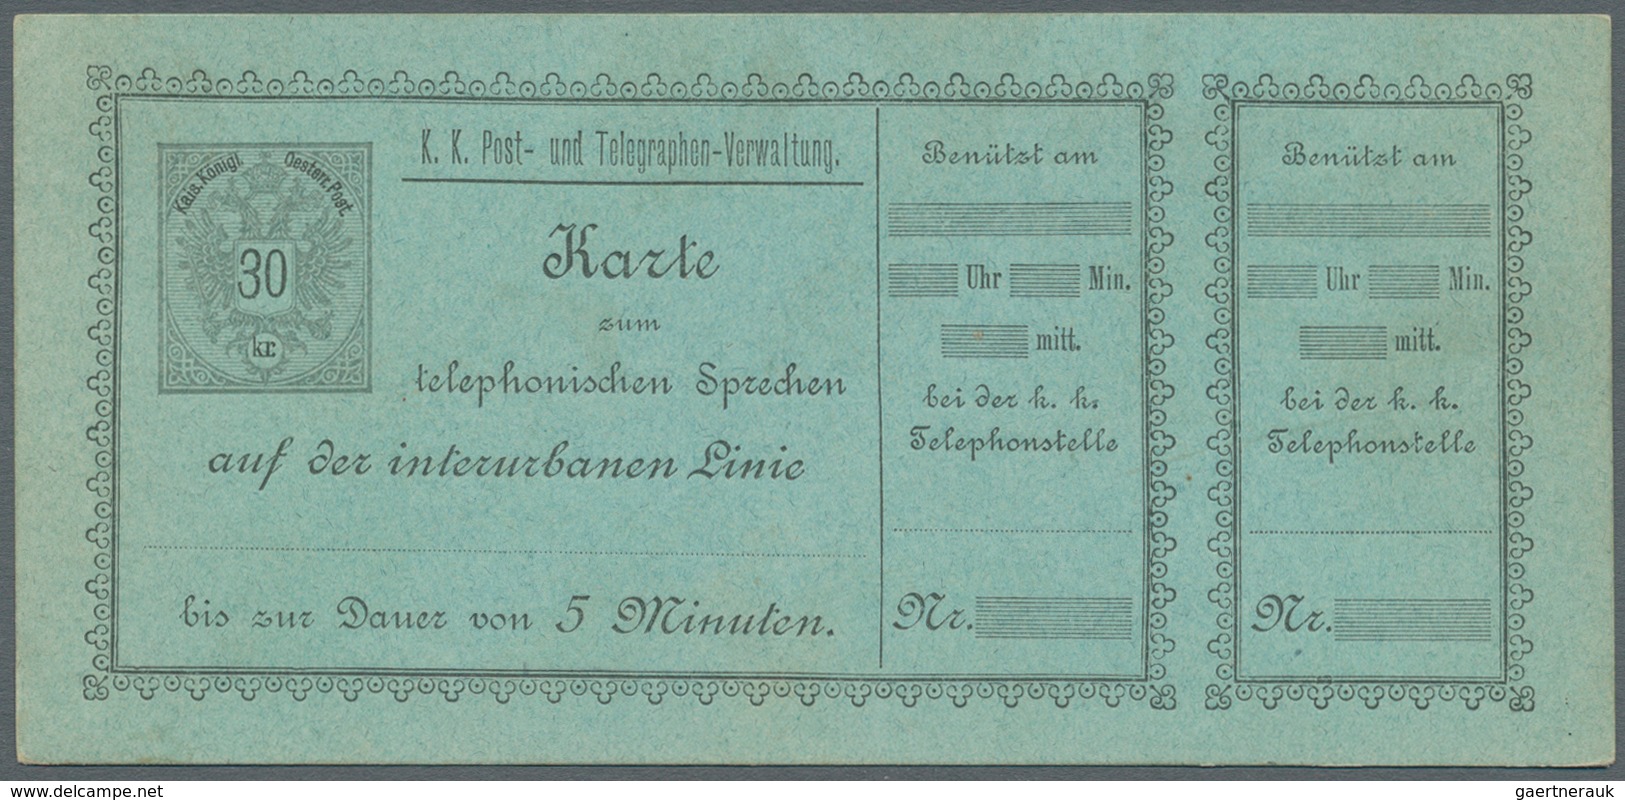 27637 Österreich - Telefonsprechkarten: 1886-1900: Sammlung von 11 UNGEBRAUCHTEN, frühen Telefonsprechkart